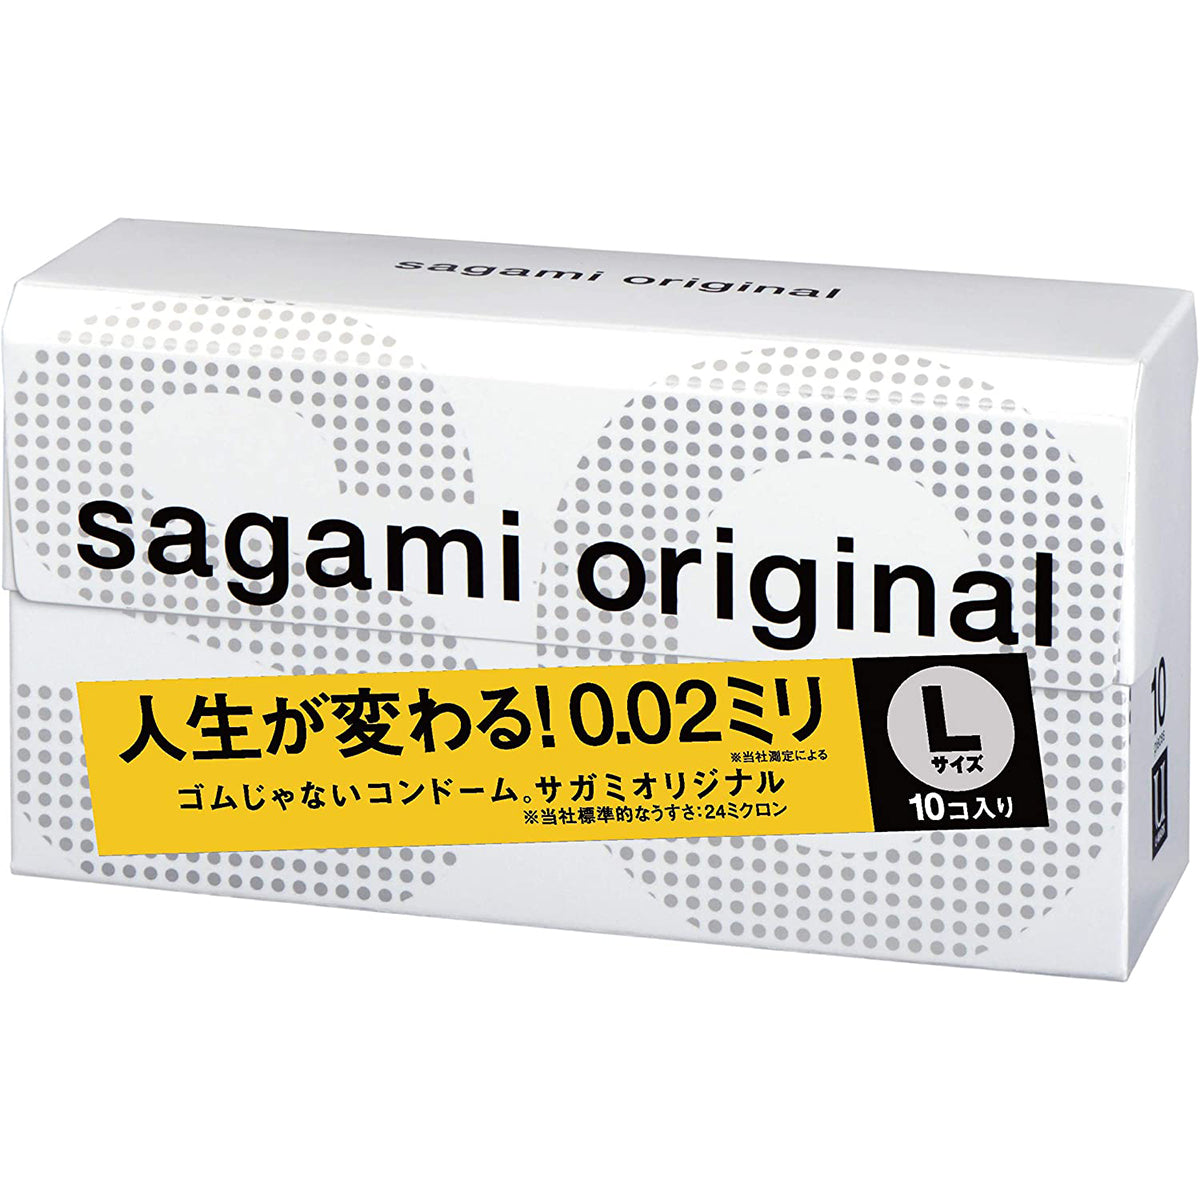 Sagami 相模原創 0.02 大碼 (第二代) 58mm 10 片裝 PU 安全套